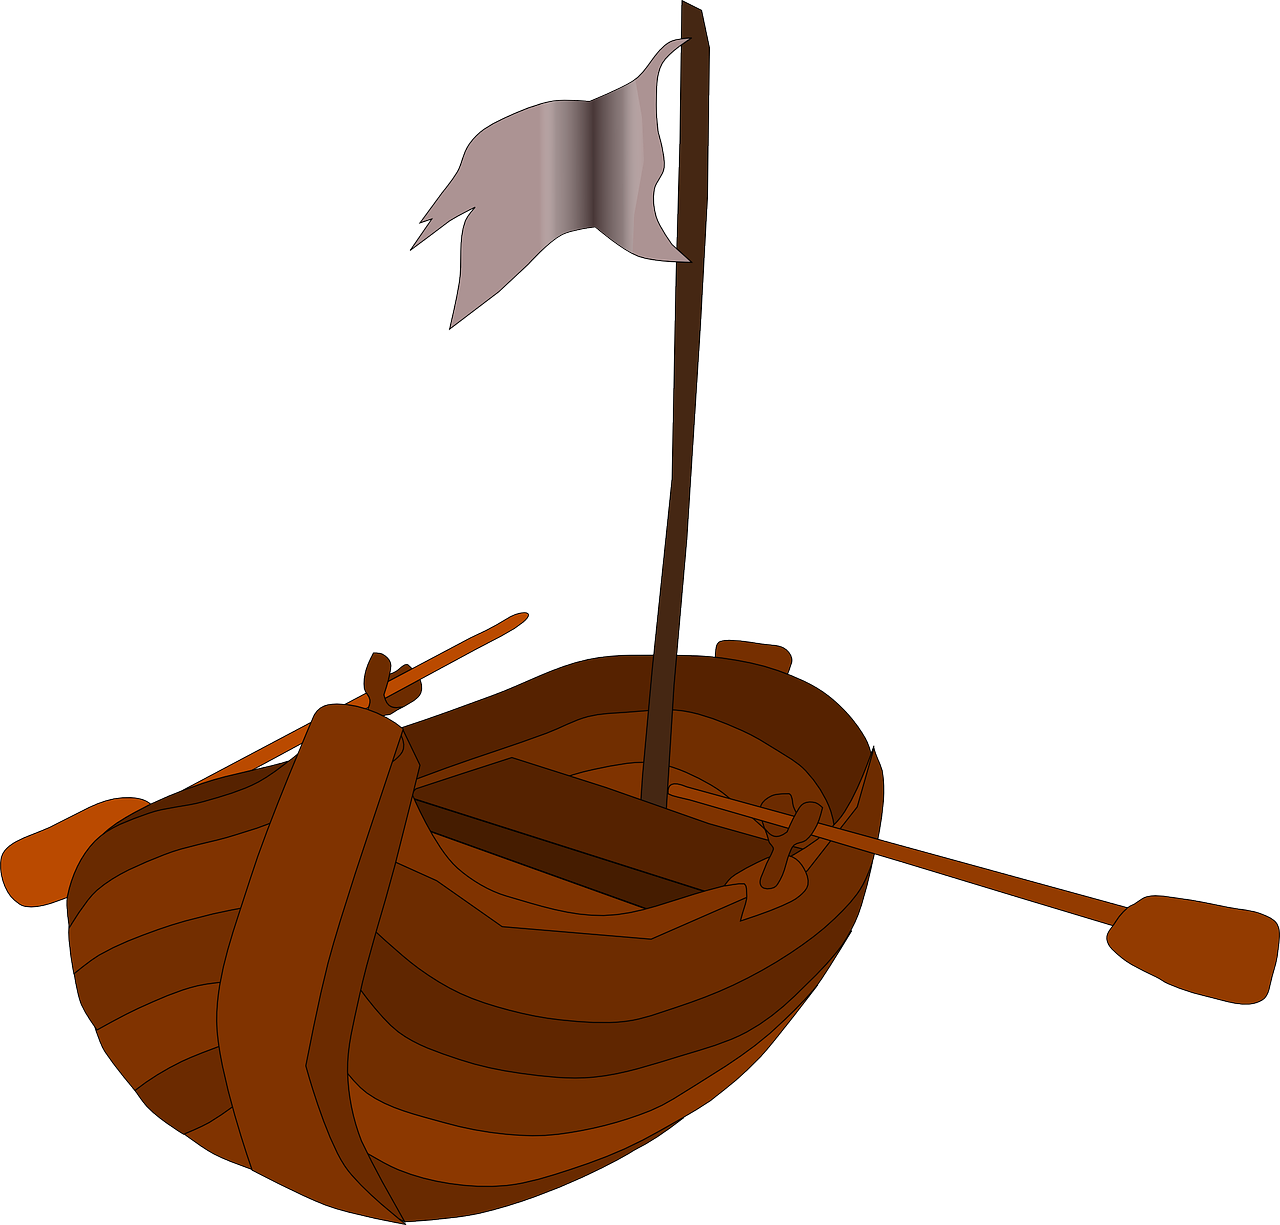 La imagen muestra un bote pirata